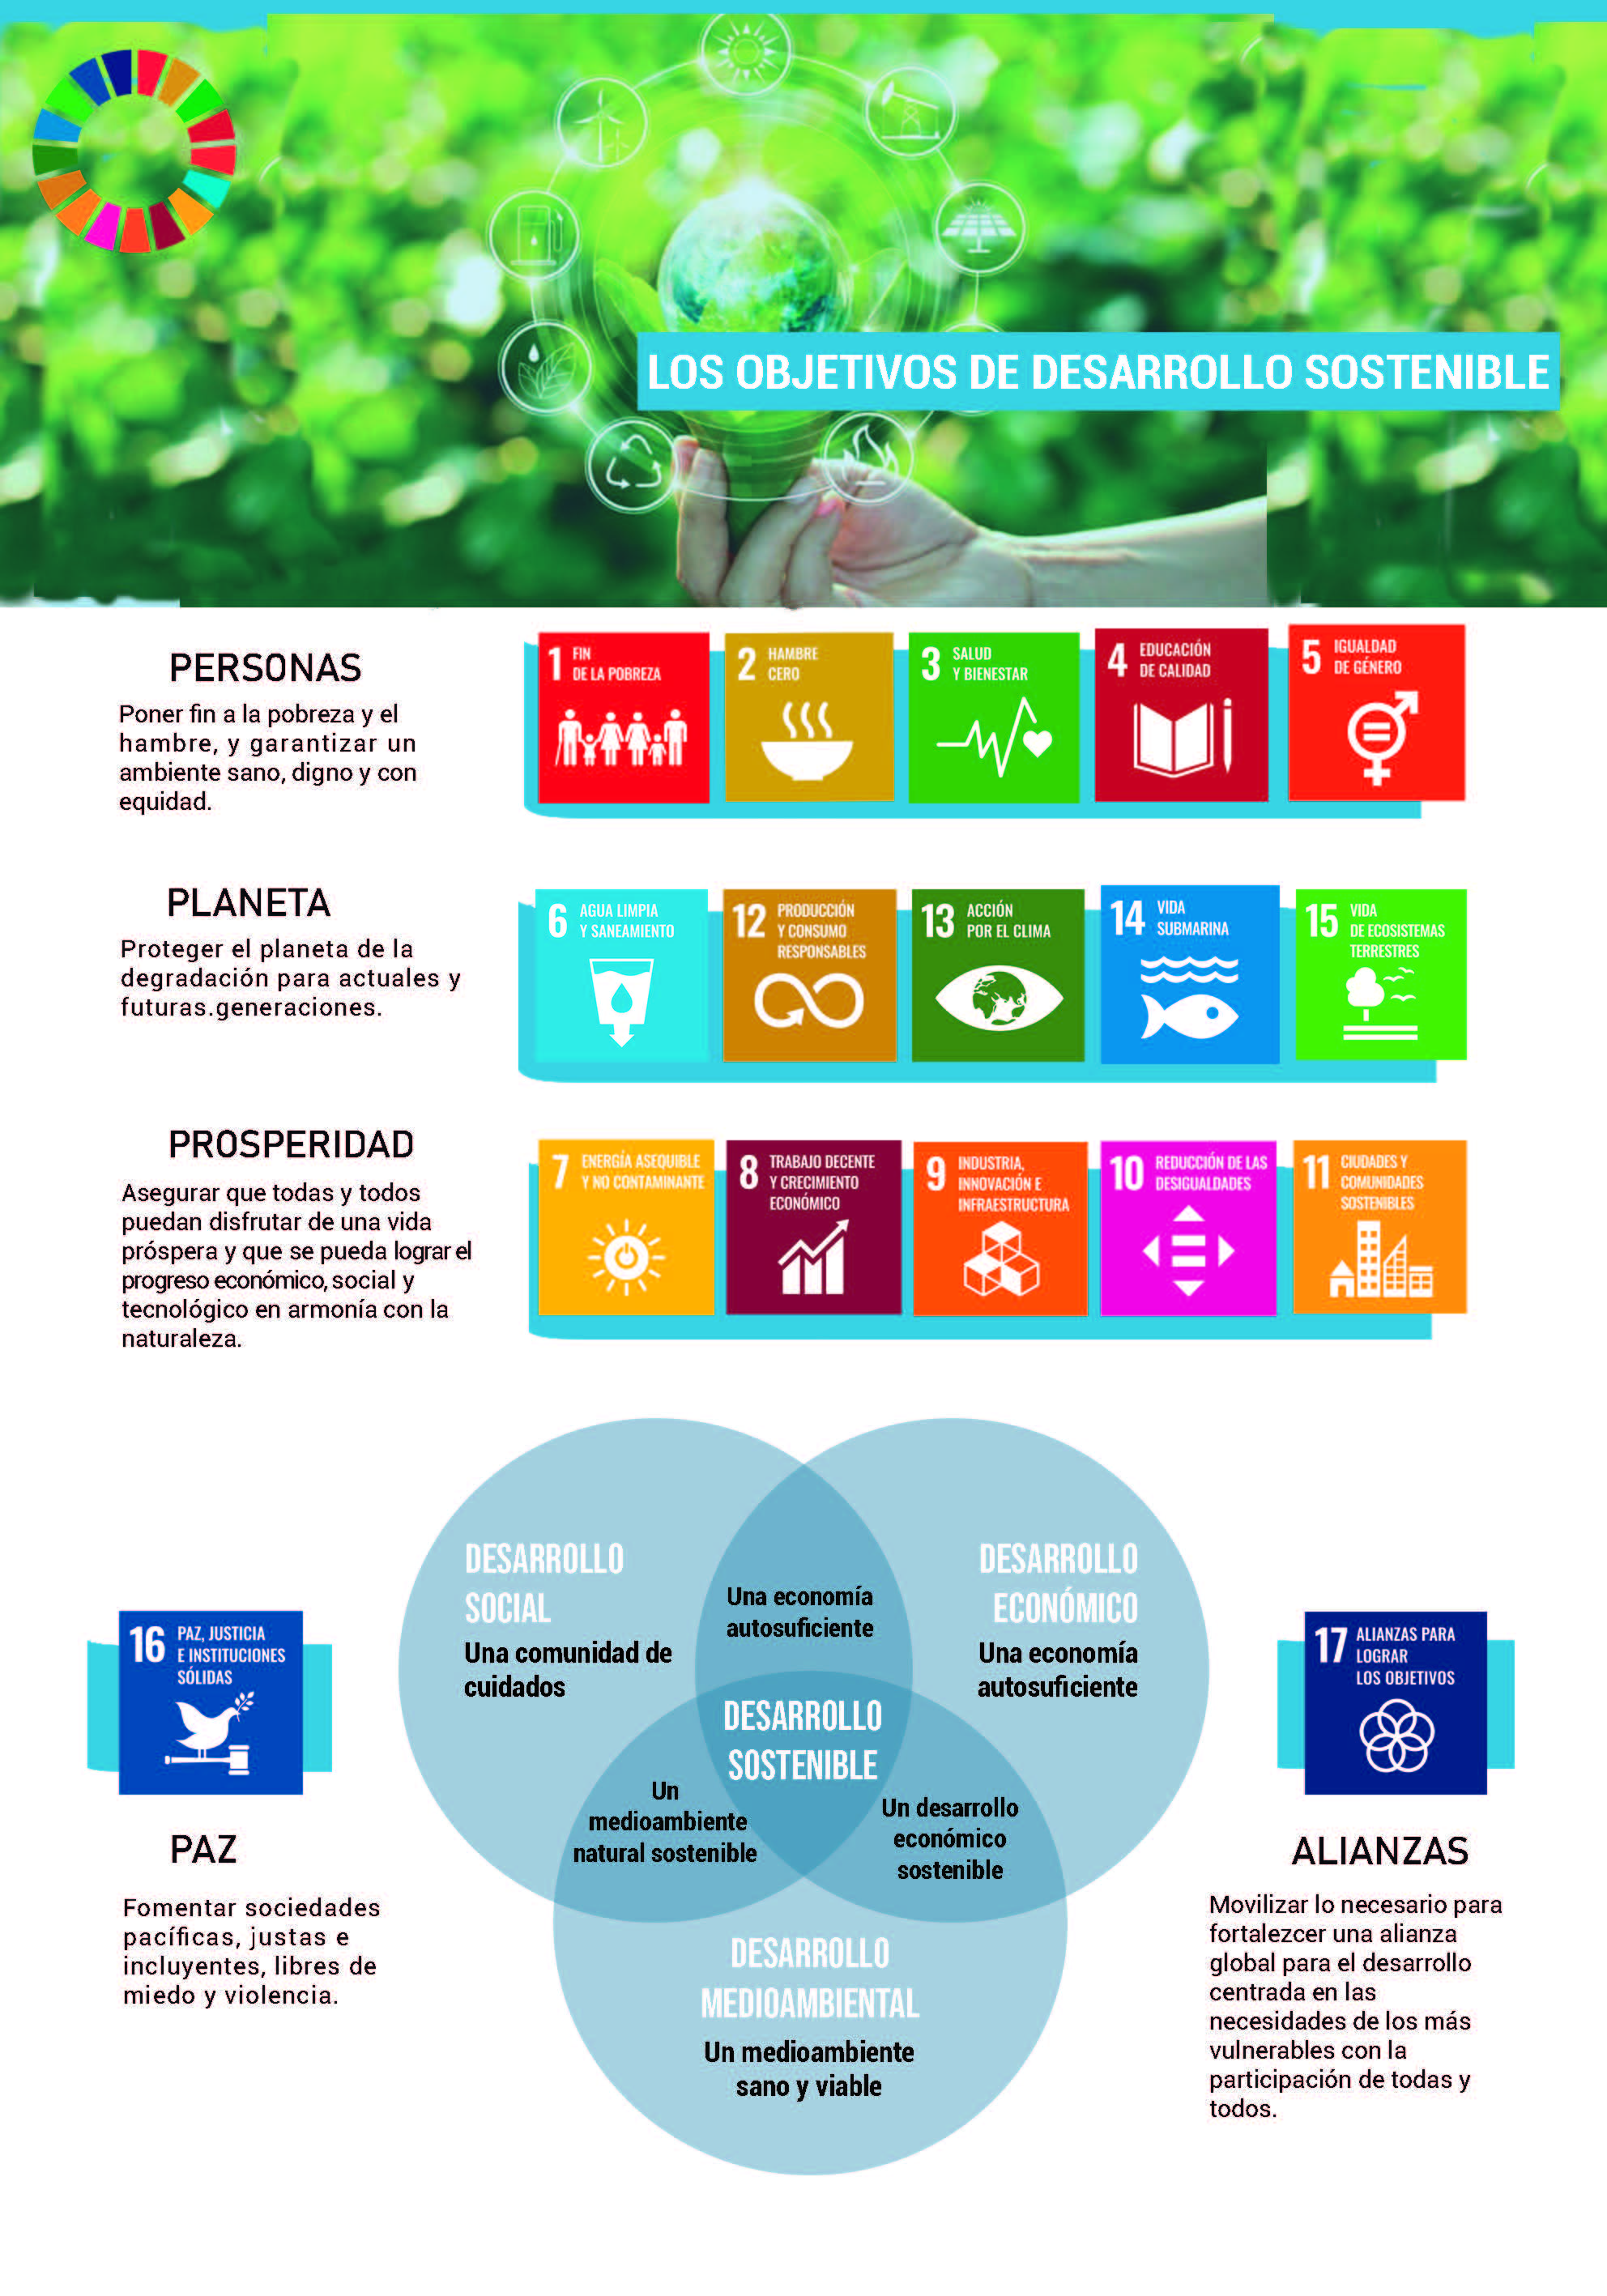 Los objetivos de desarrollo sostenible